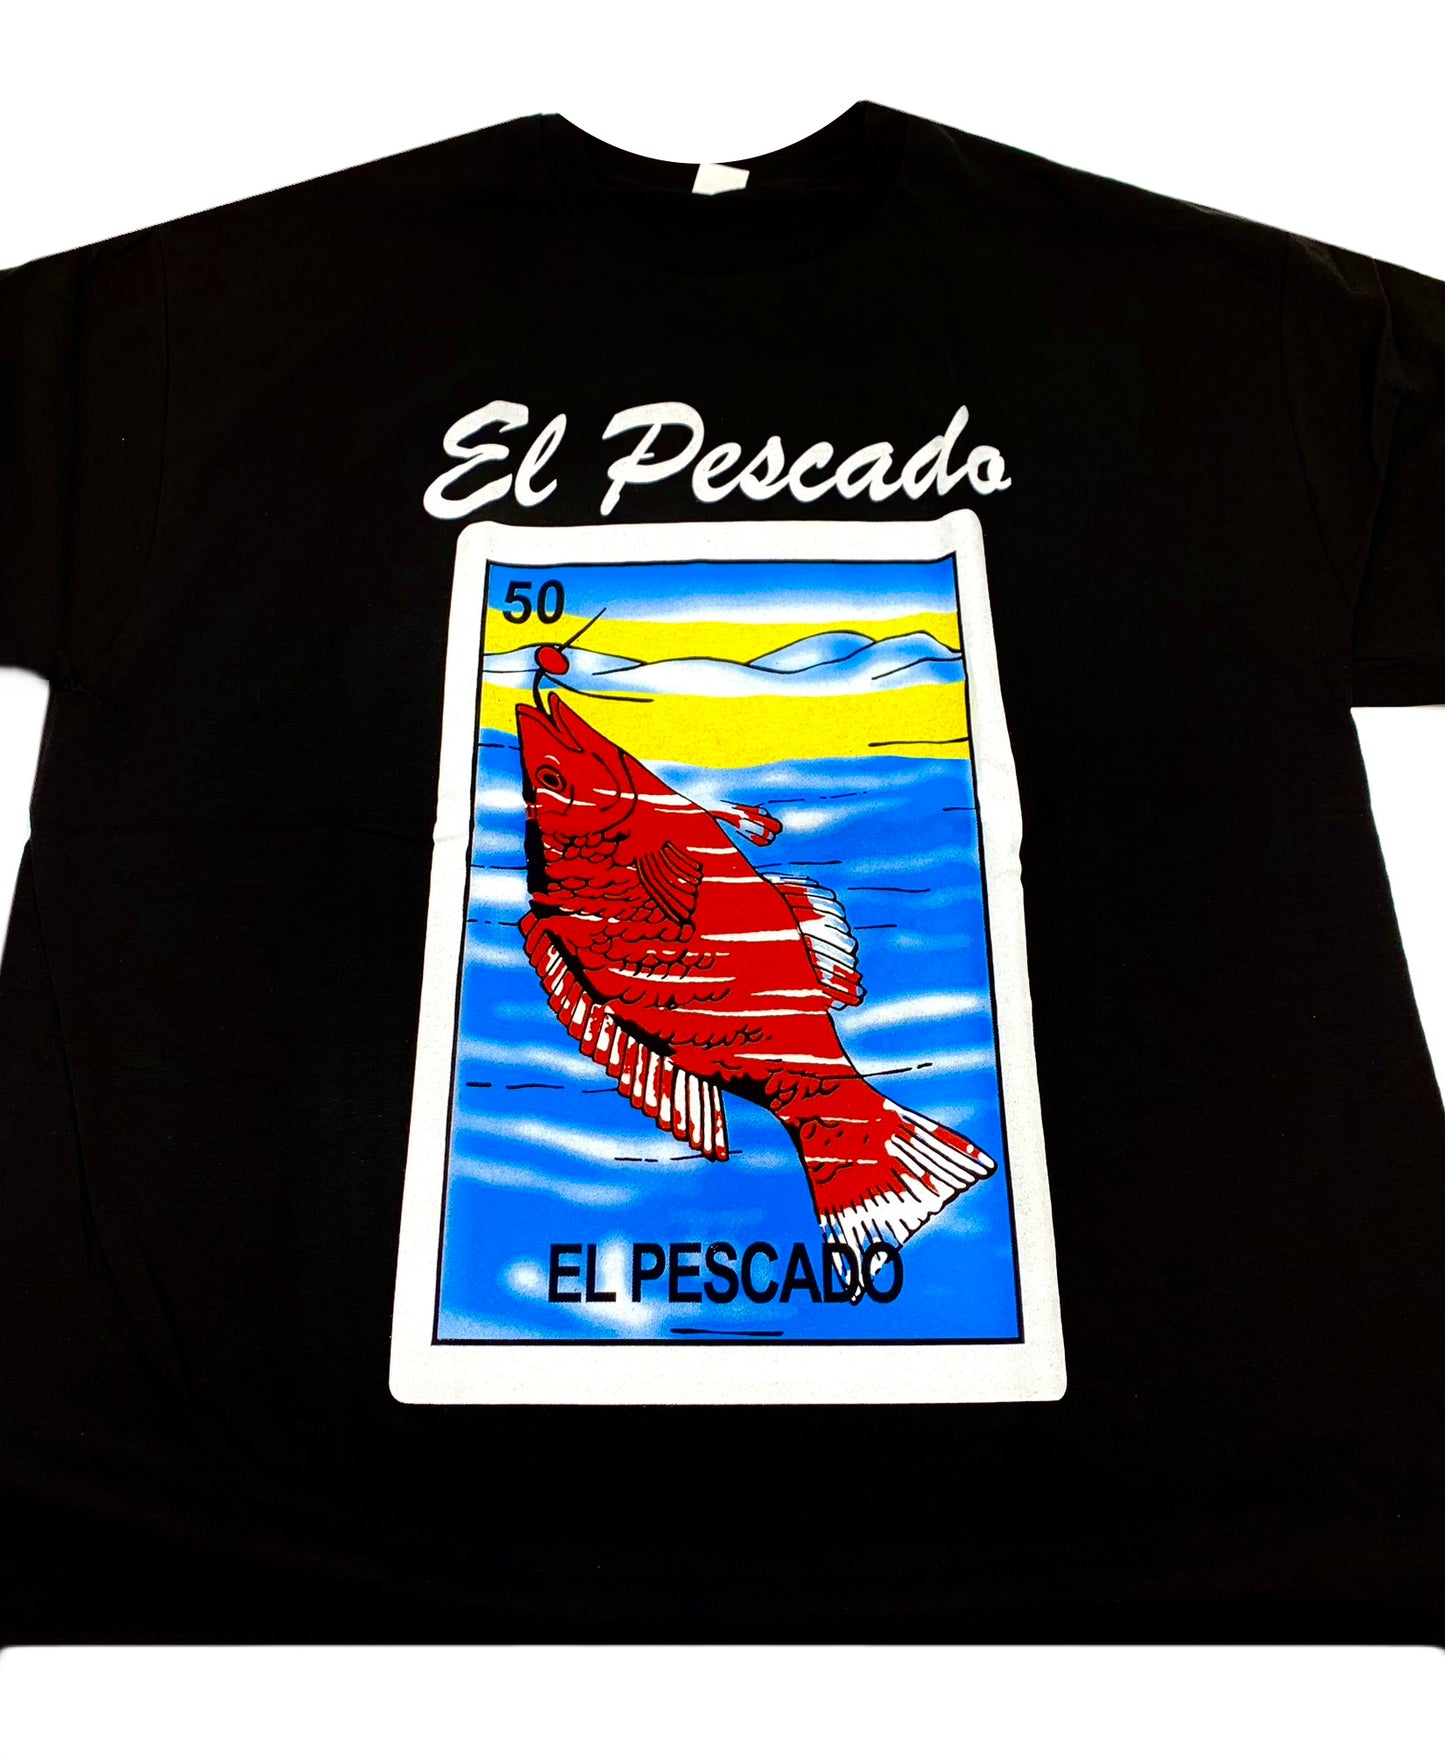 (12ct) El Pescado T-shirts $6.99 EA